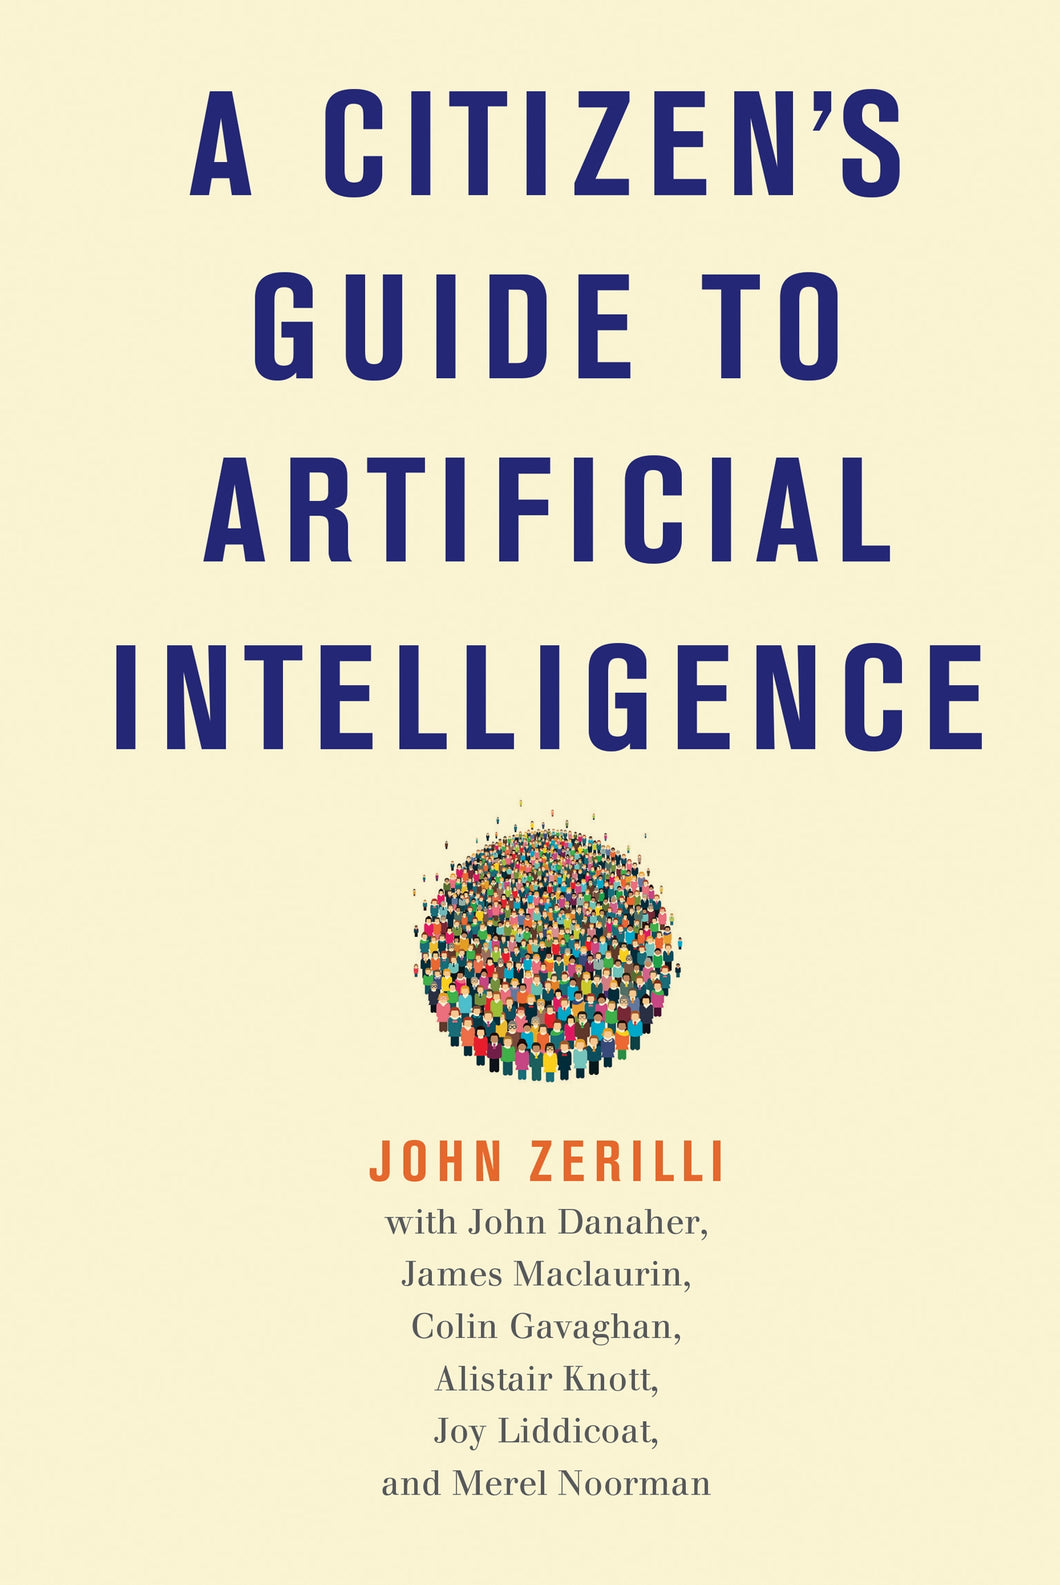 A Citizen's Guide to Artificial Intelligence ร้านหนังสือและสิ่งของ เป็นร้านหนังสือภาษาอังกฤษหายาก และร้านกาแฟ หรือ บุ๊คคาเฟ่ ตั้งอยู่สุขุมวิท กรุงเทพ